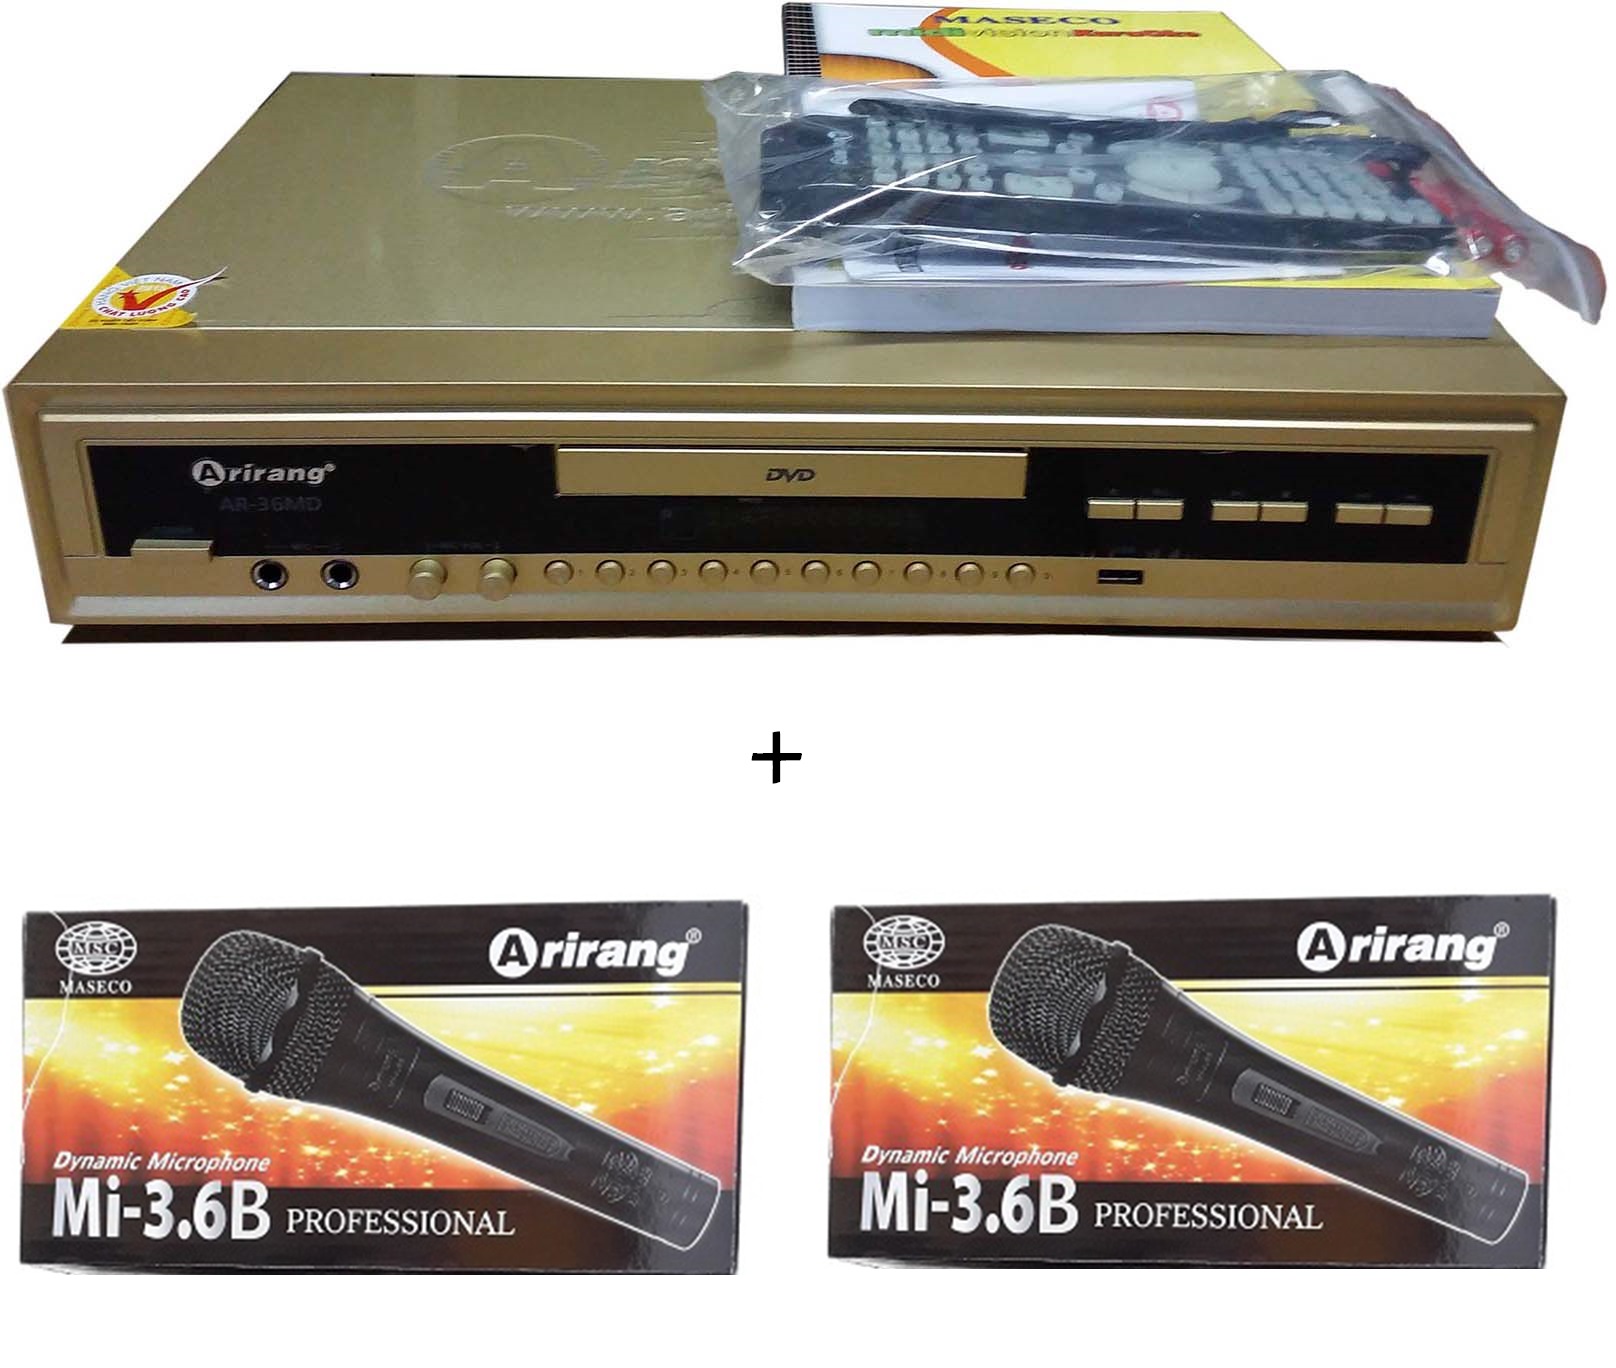 Đầu DVD Karaoke Arirang AR-36MD (vàng) + 2 micro có dây Arirang 3.6B